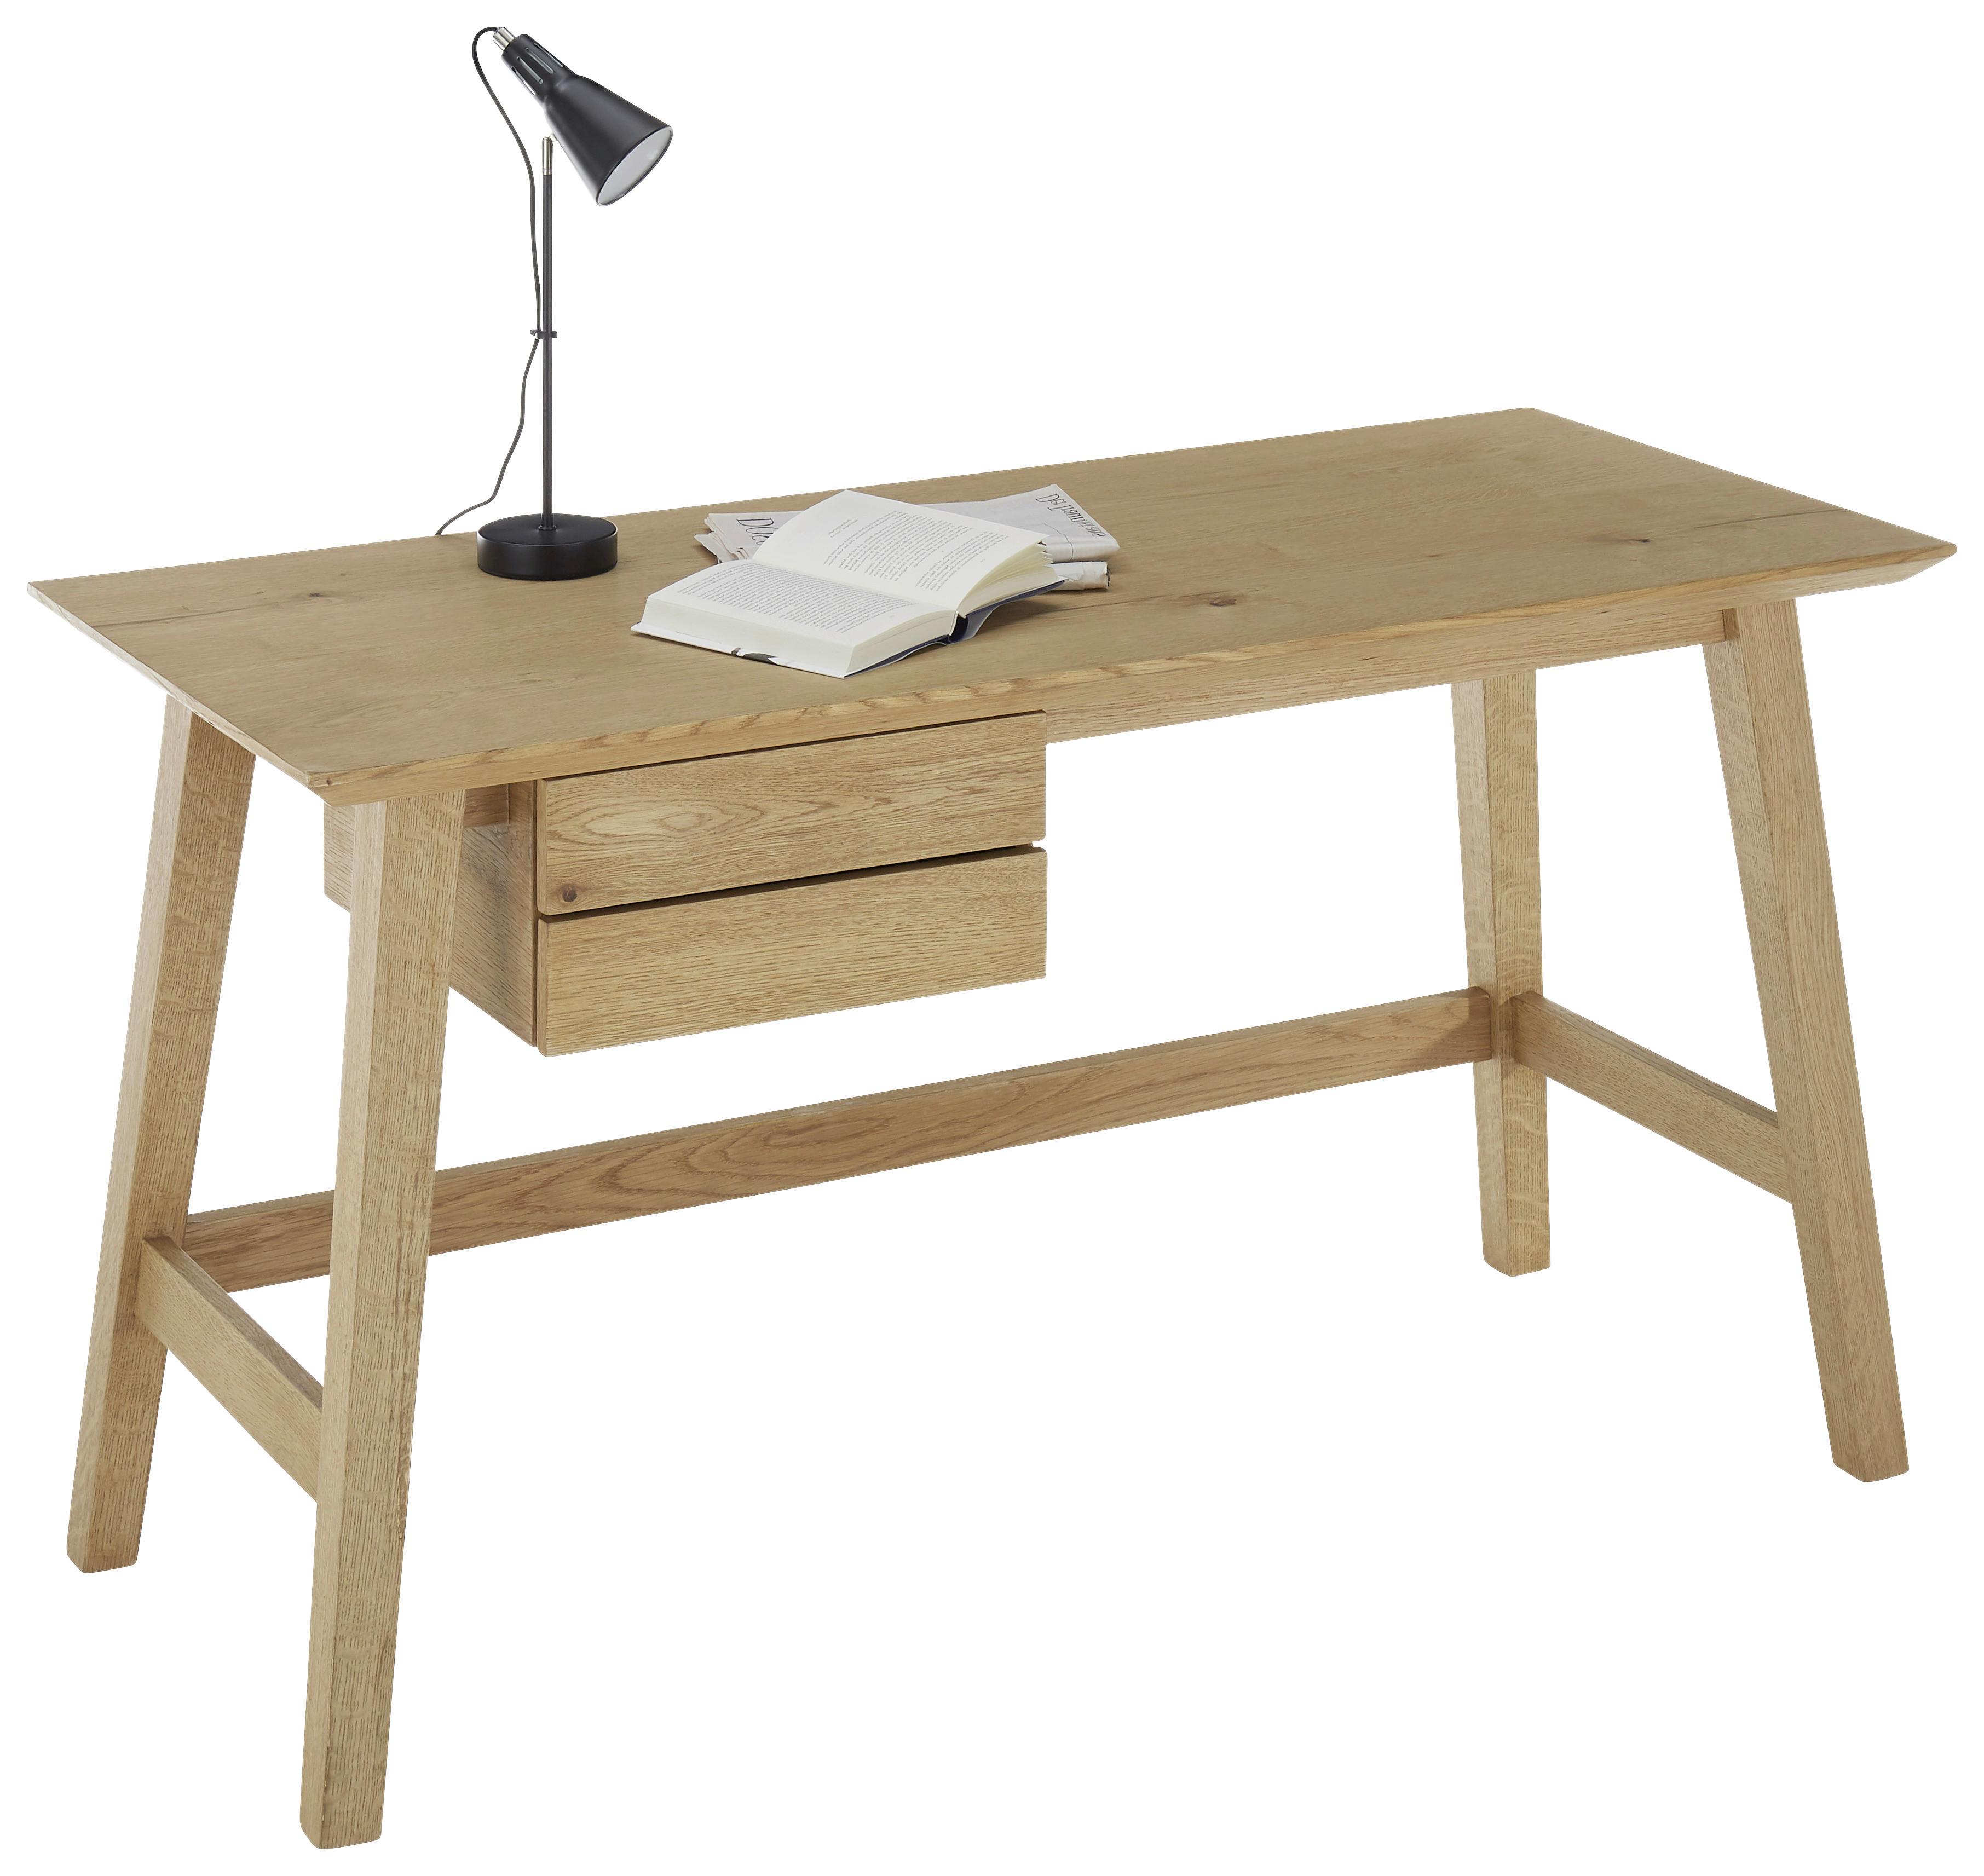 Schreibtisch B 140cm H 75cm Taluca, Eichefarben - Eichefarben/Schwarz, MODERN, Holz/Holzwerkstoff (140/75/60cm)